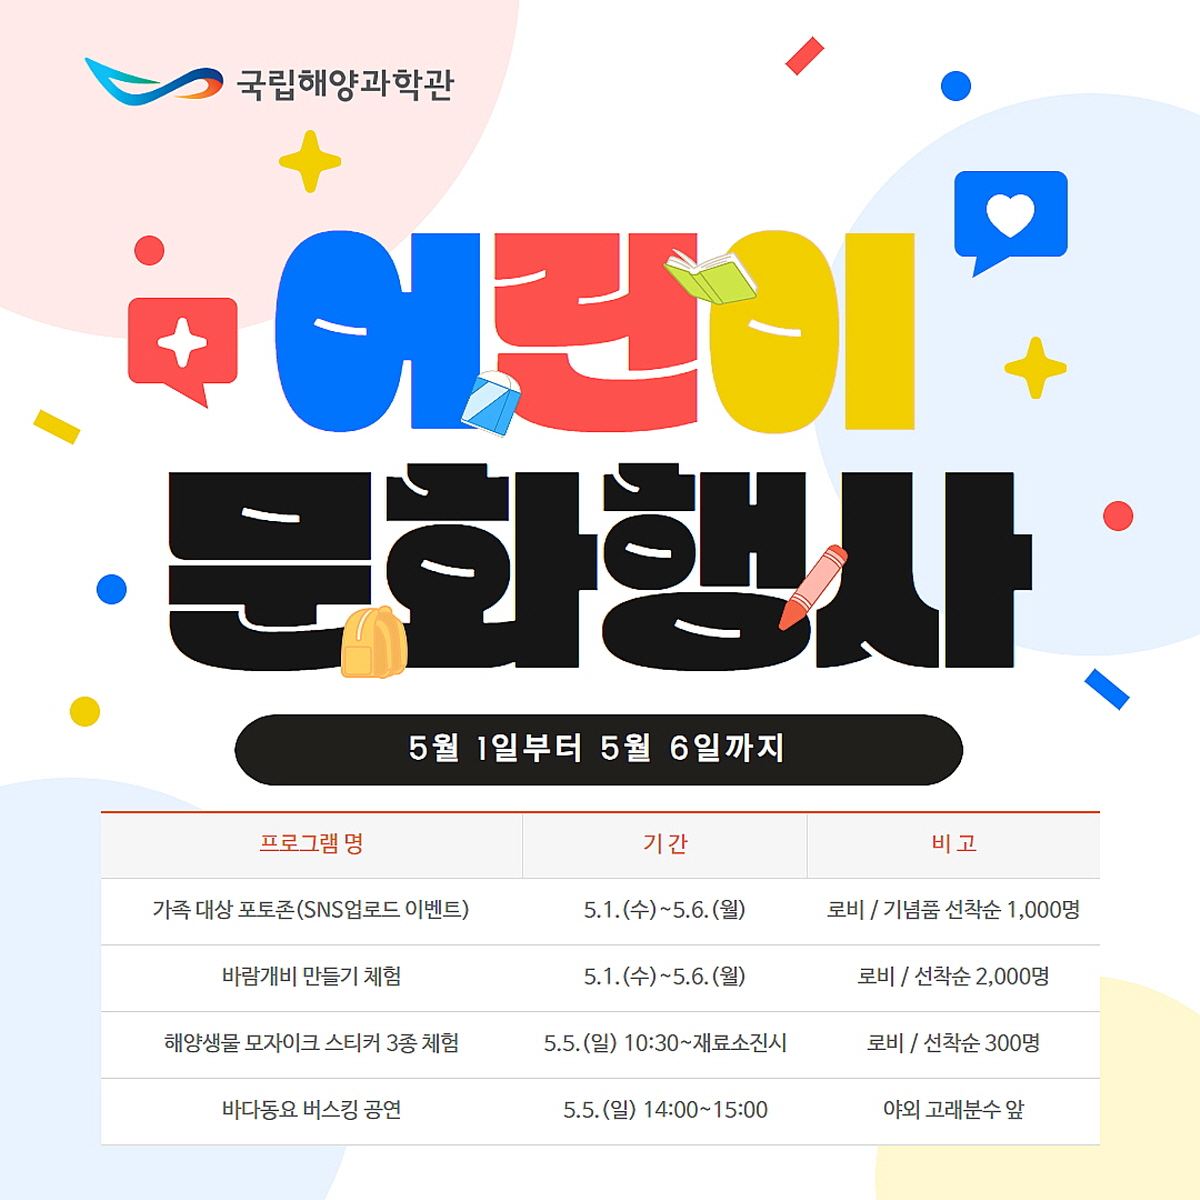 국립해양과학관, 1일부터 6일까지 ‘어린이날 문화행사’ 개최